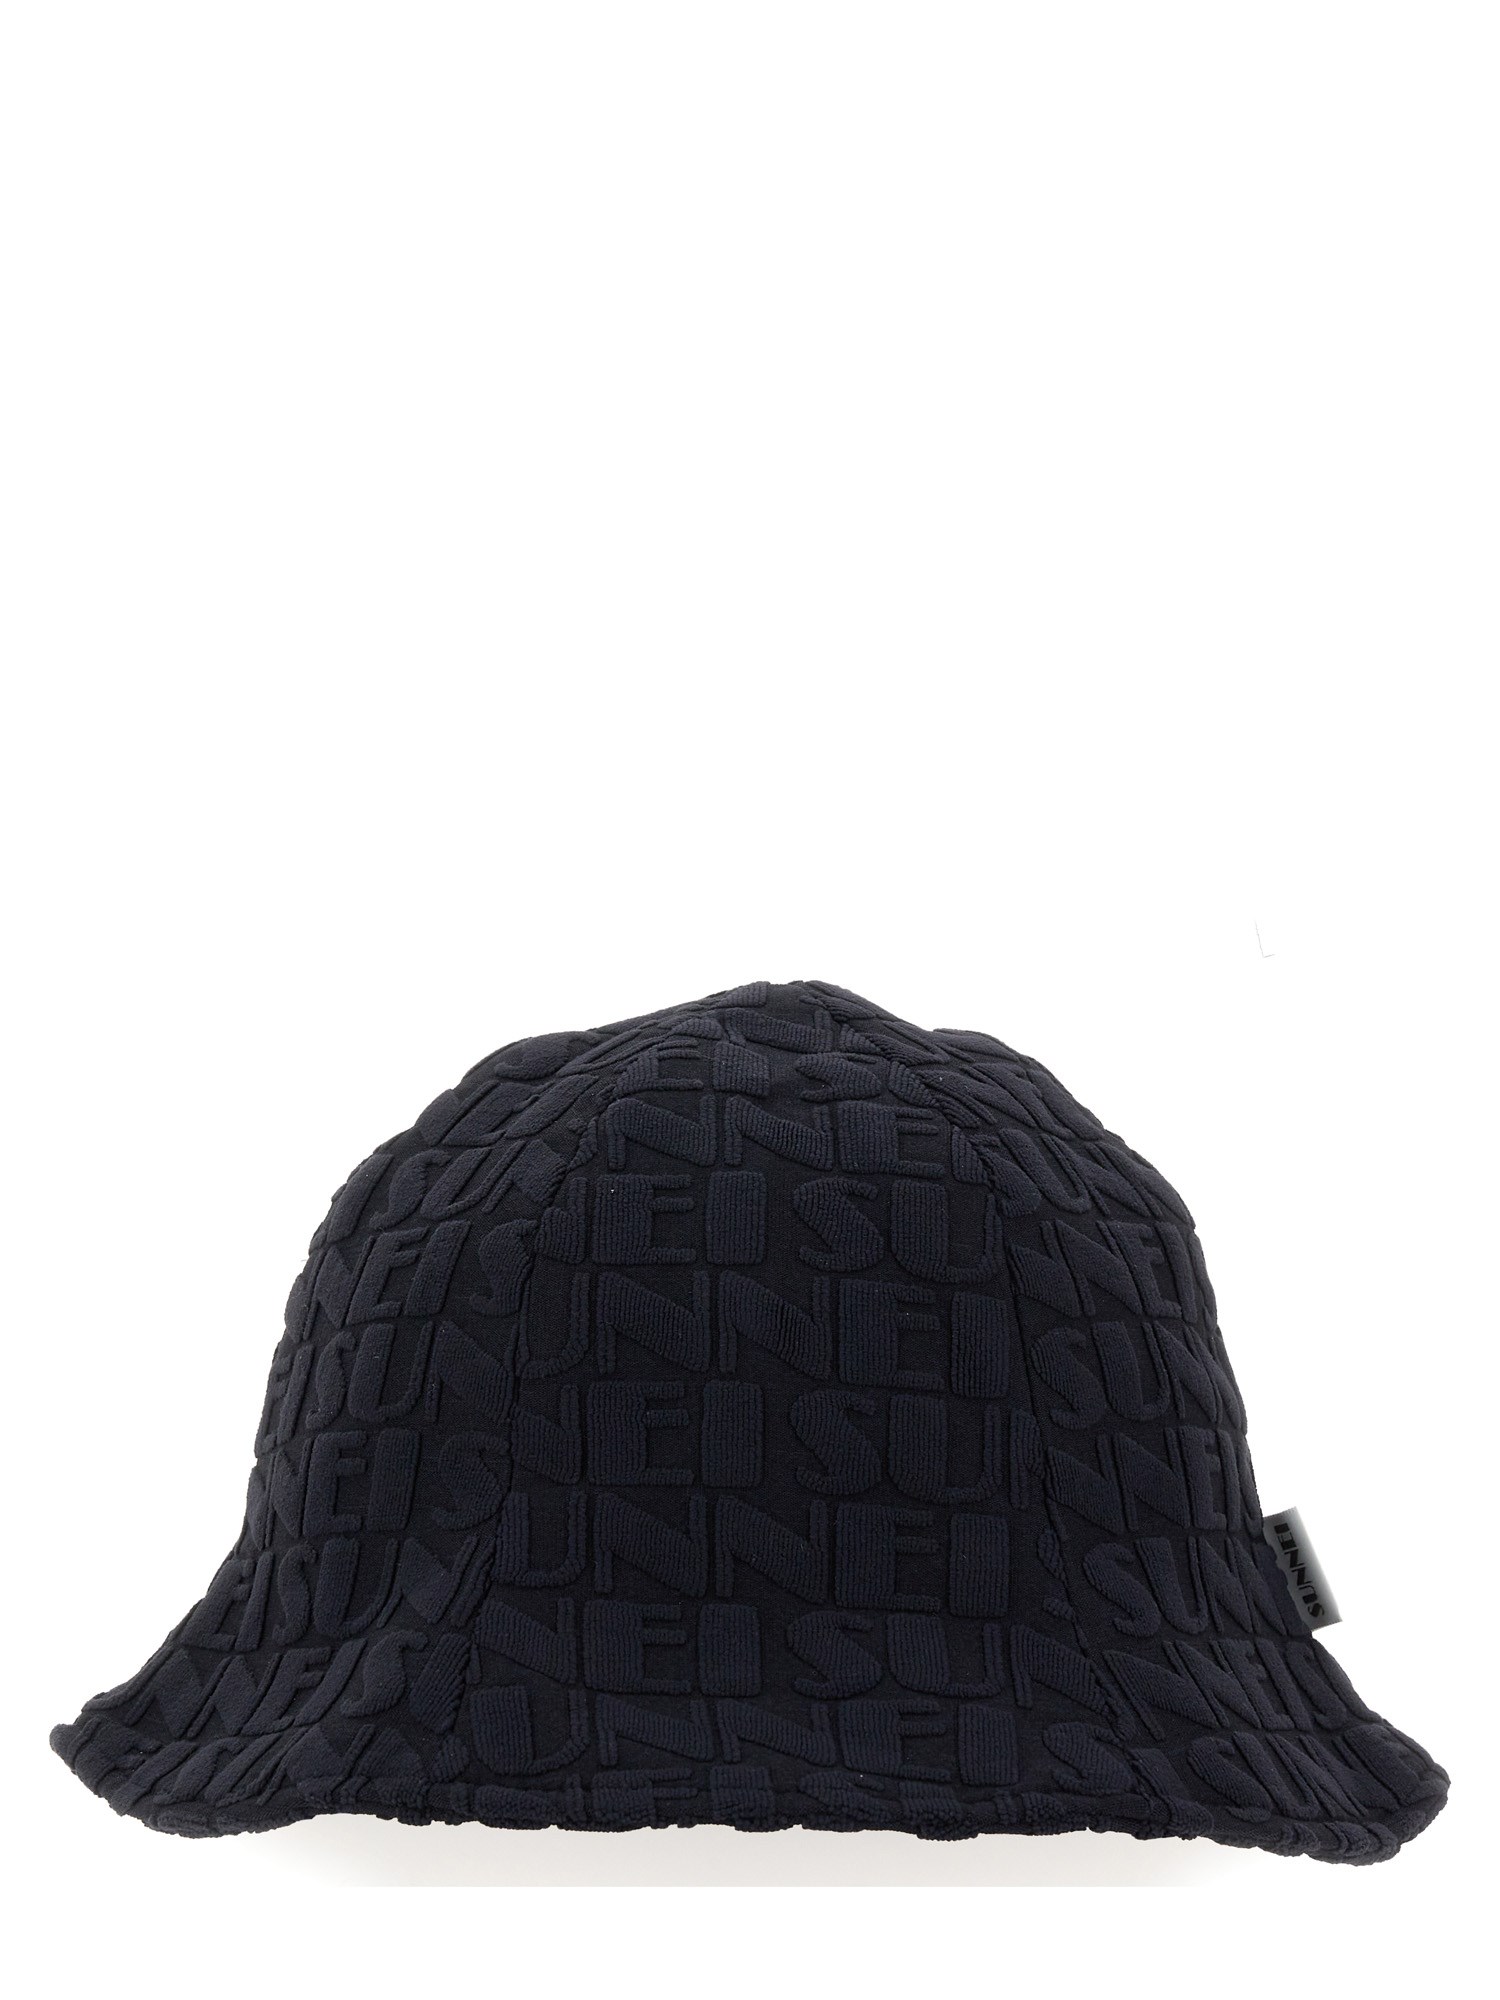 Sunnei sunnei bucket hat with logo pattern